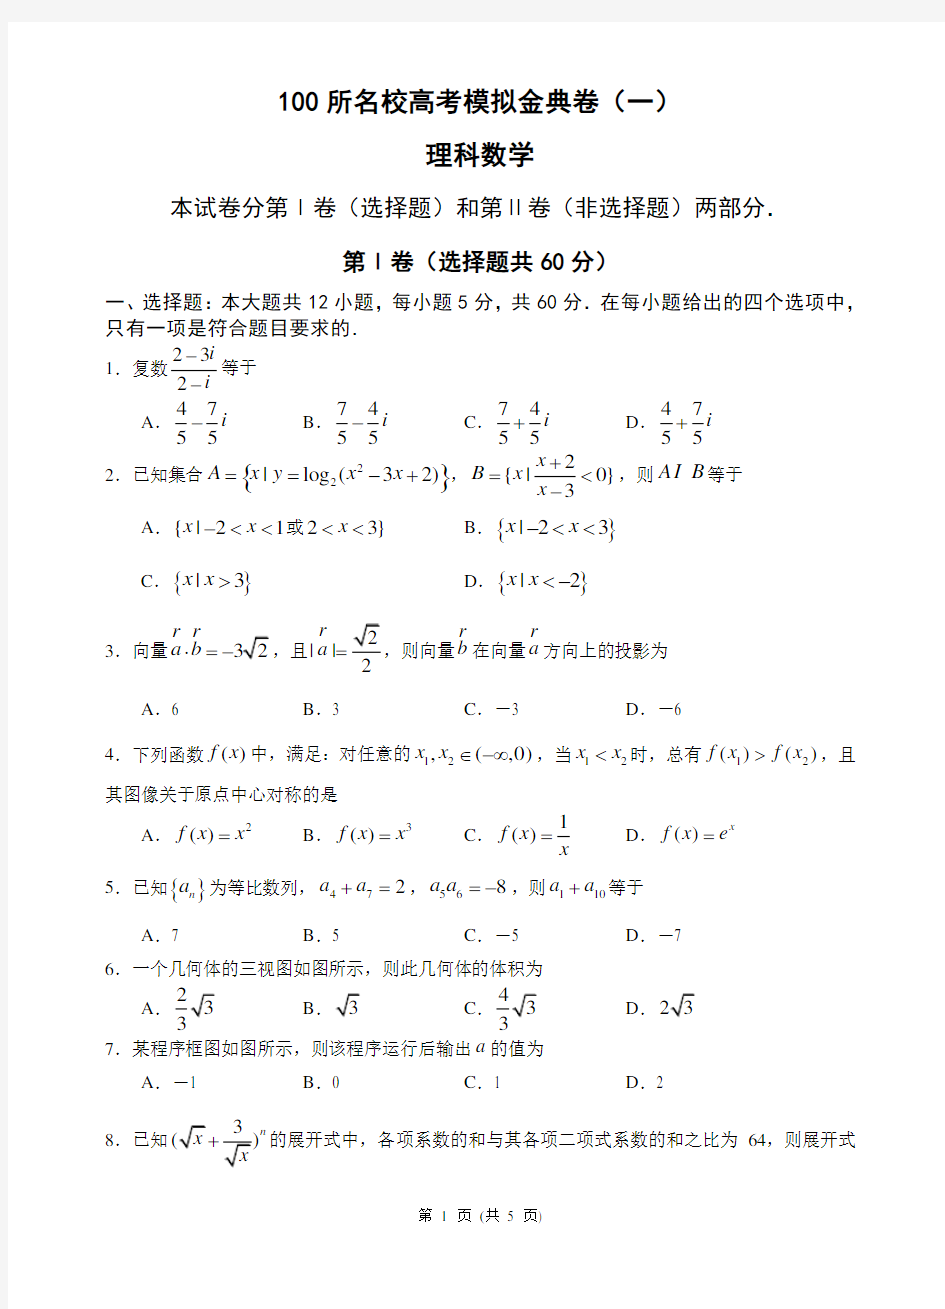 (完整版)100所名校高考模拟金典卷(一)理科数学